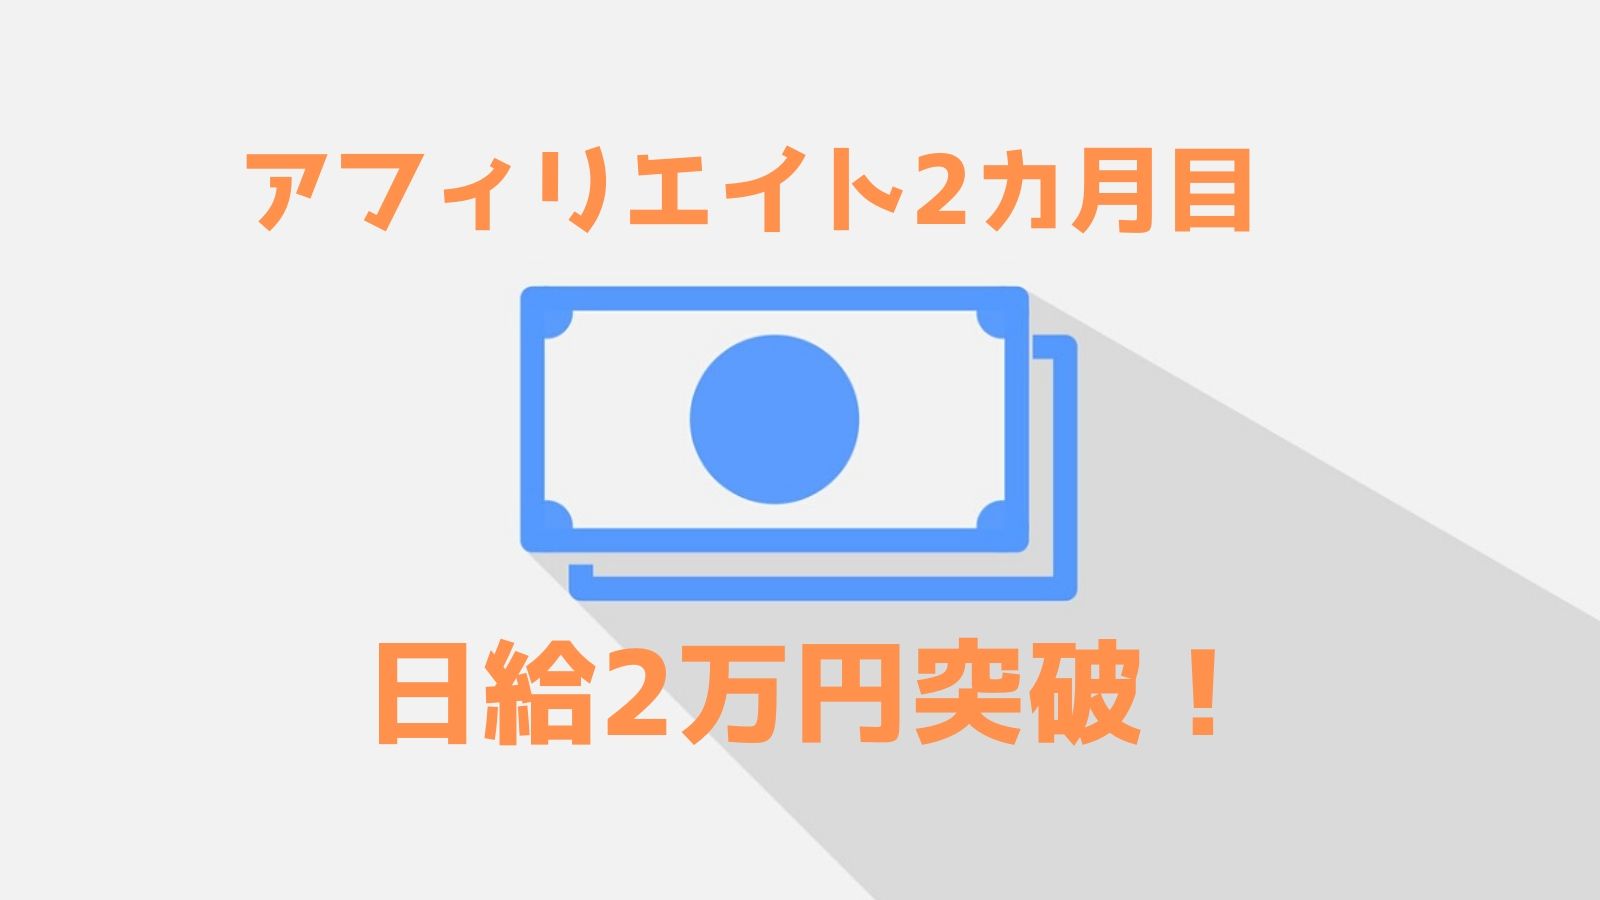 アフィリエイト2カ月目、 日給2万円突破！